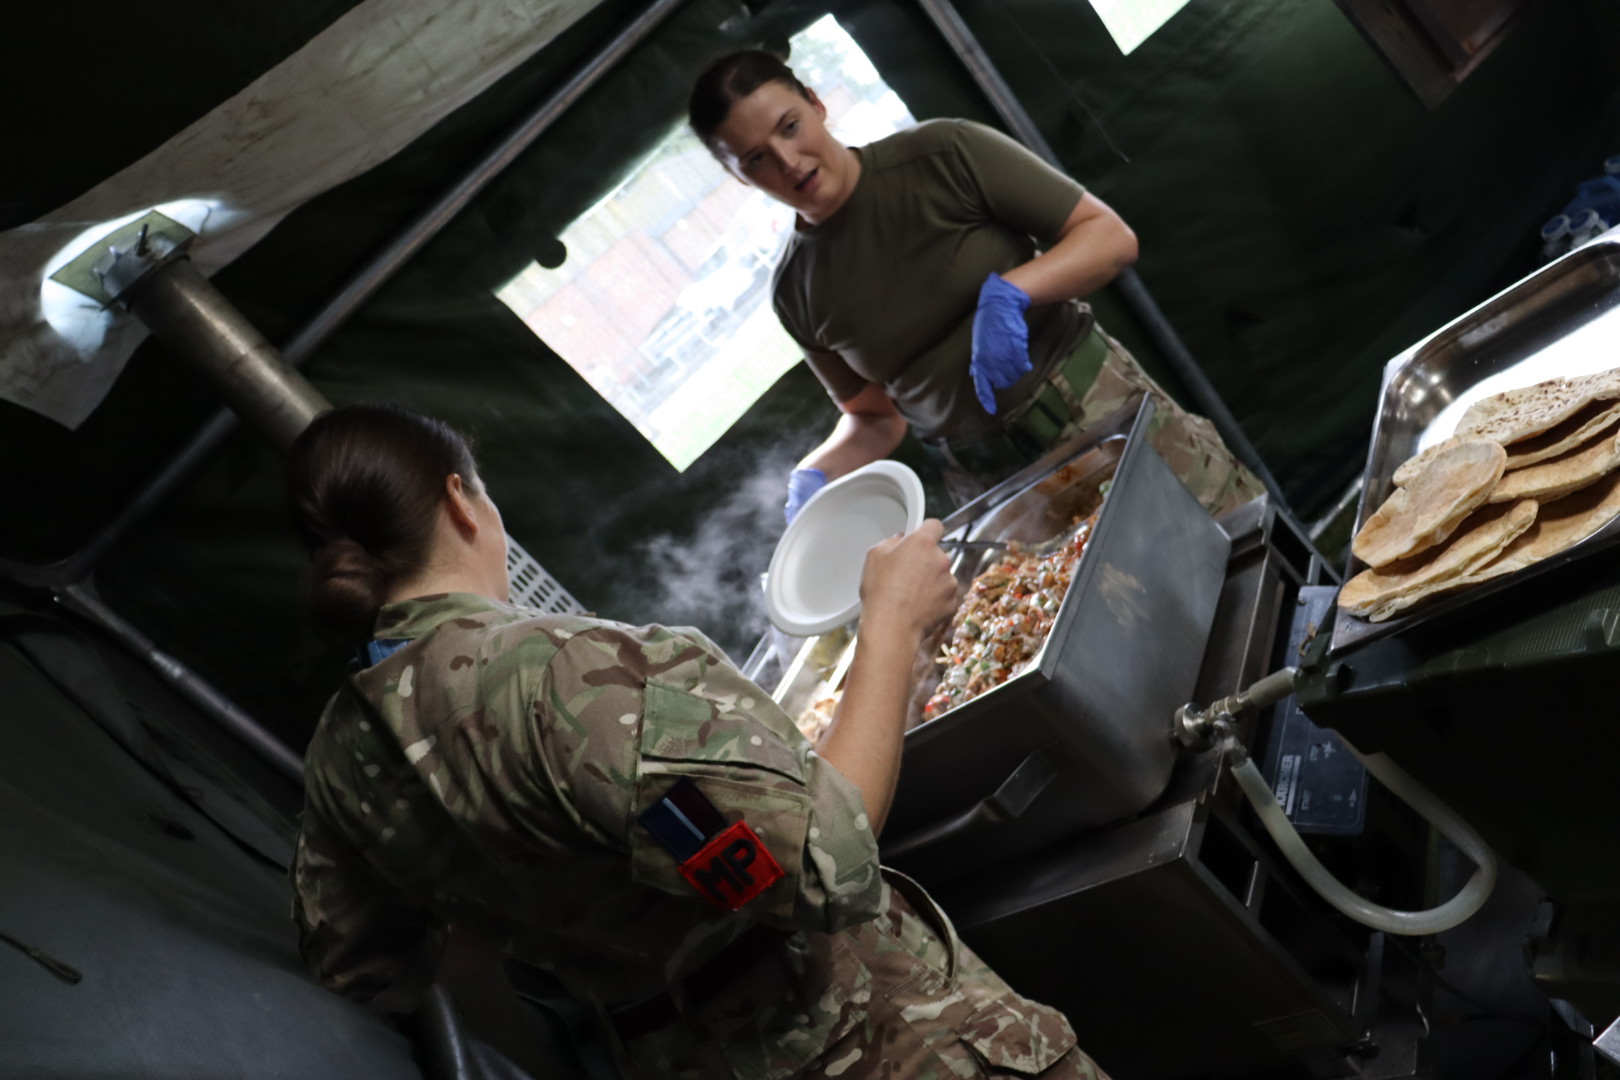 RAF chefs preparing lunch in the field kitchen